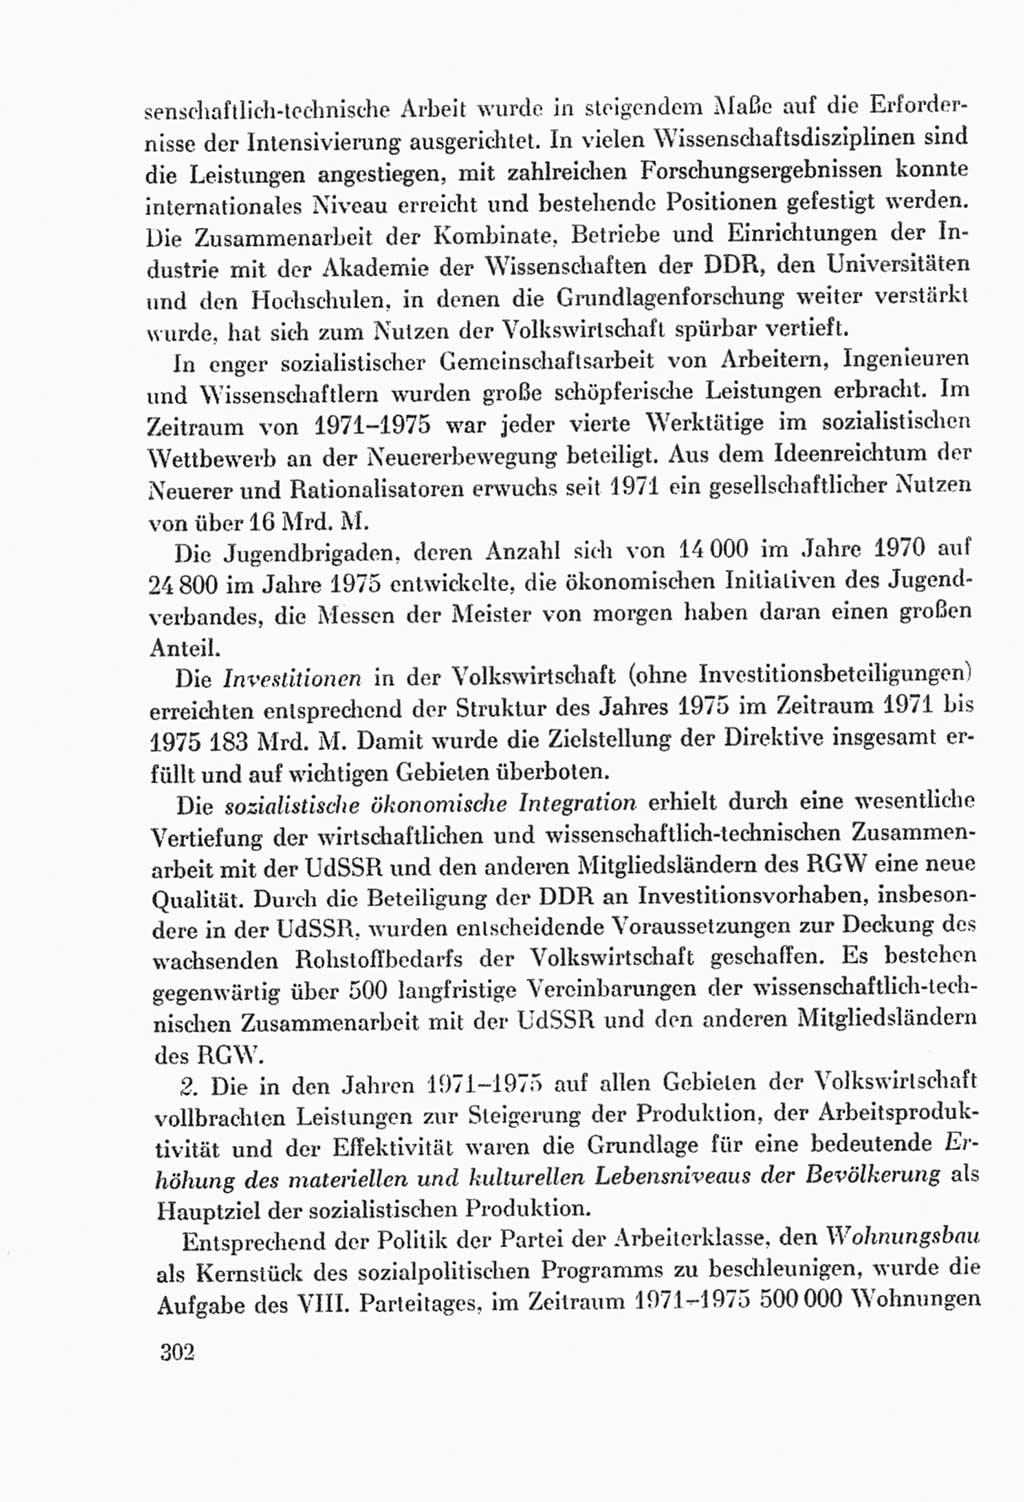 Protokoll der Verhandlungen des Ⅸ. Parteitages der Sozialistischen Einheitspartei Deutschlands (SED) [Deutsche Demokratische Republik (DDR)] 1976, Band 2, Seite 302 (Prot. Verh. Ⅸ. PT SED DDR 1976, Bd. 2, S. 302)